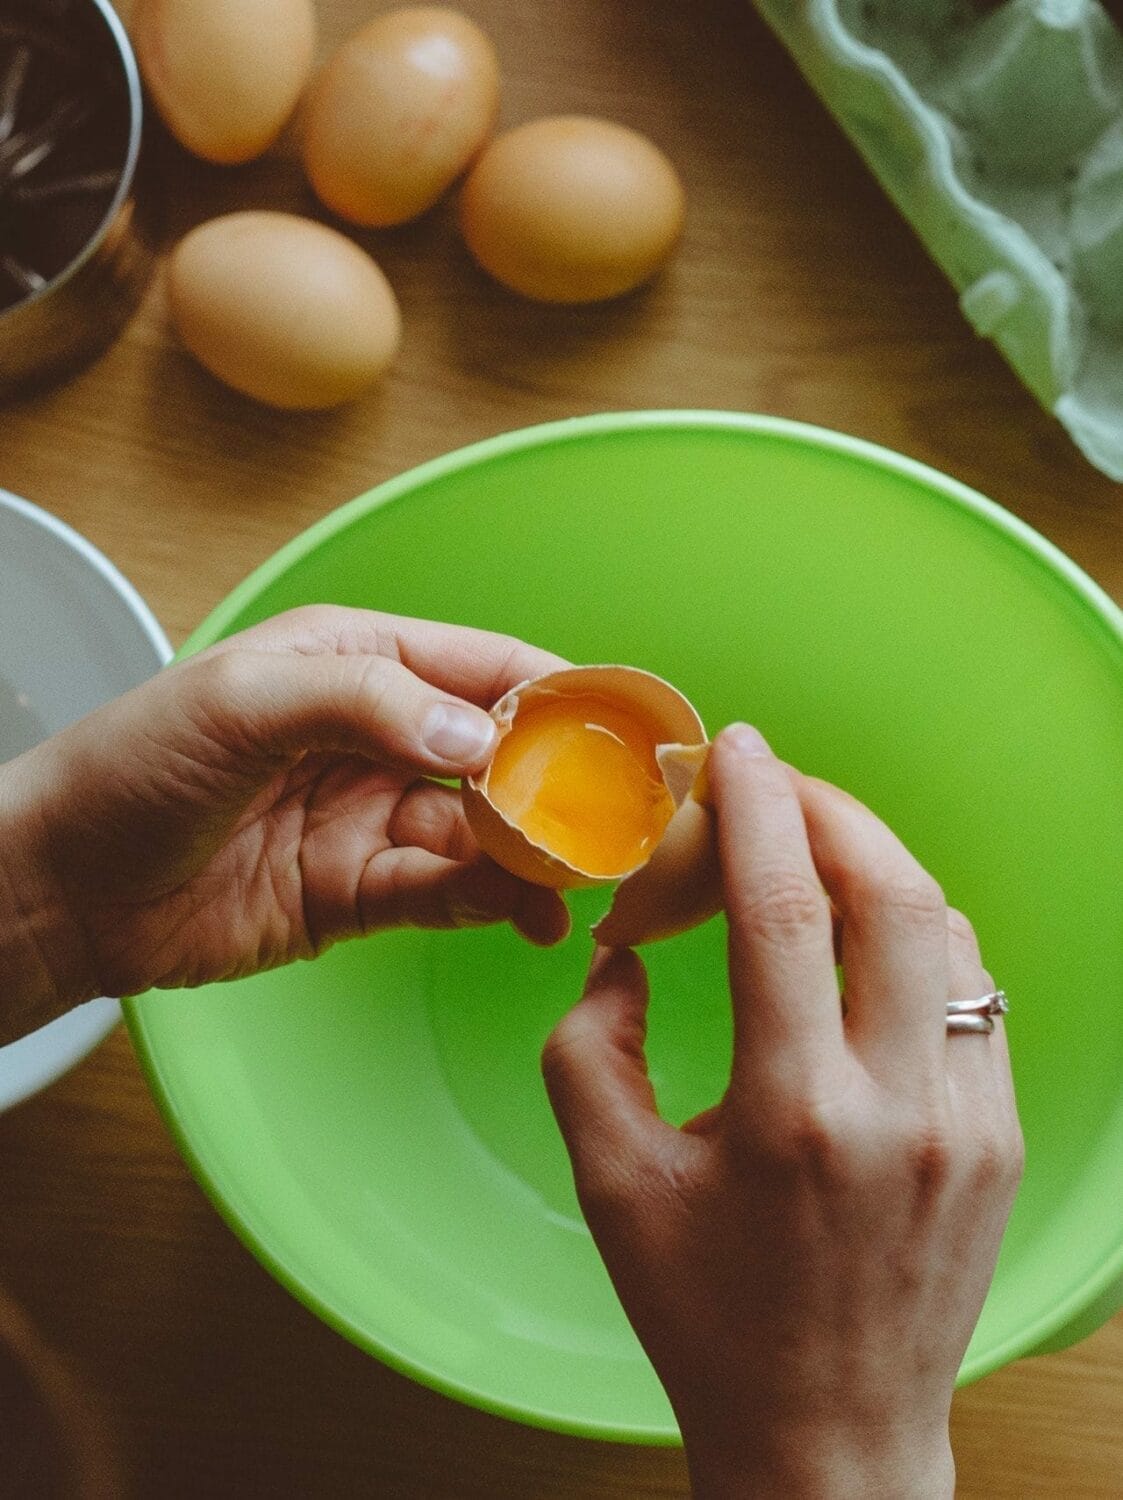 Consumir menos azúcar y más huevos potencia la calidad de vida y salud, por IENutrición